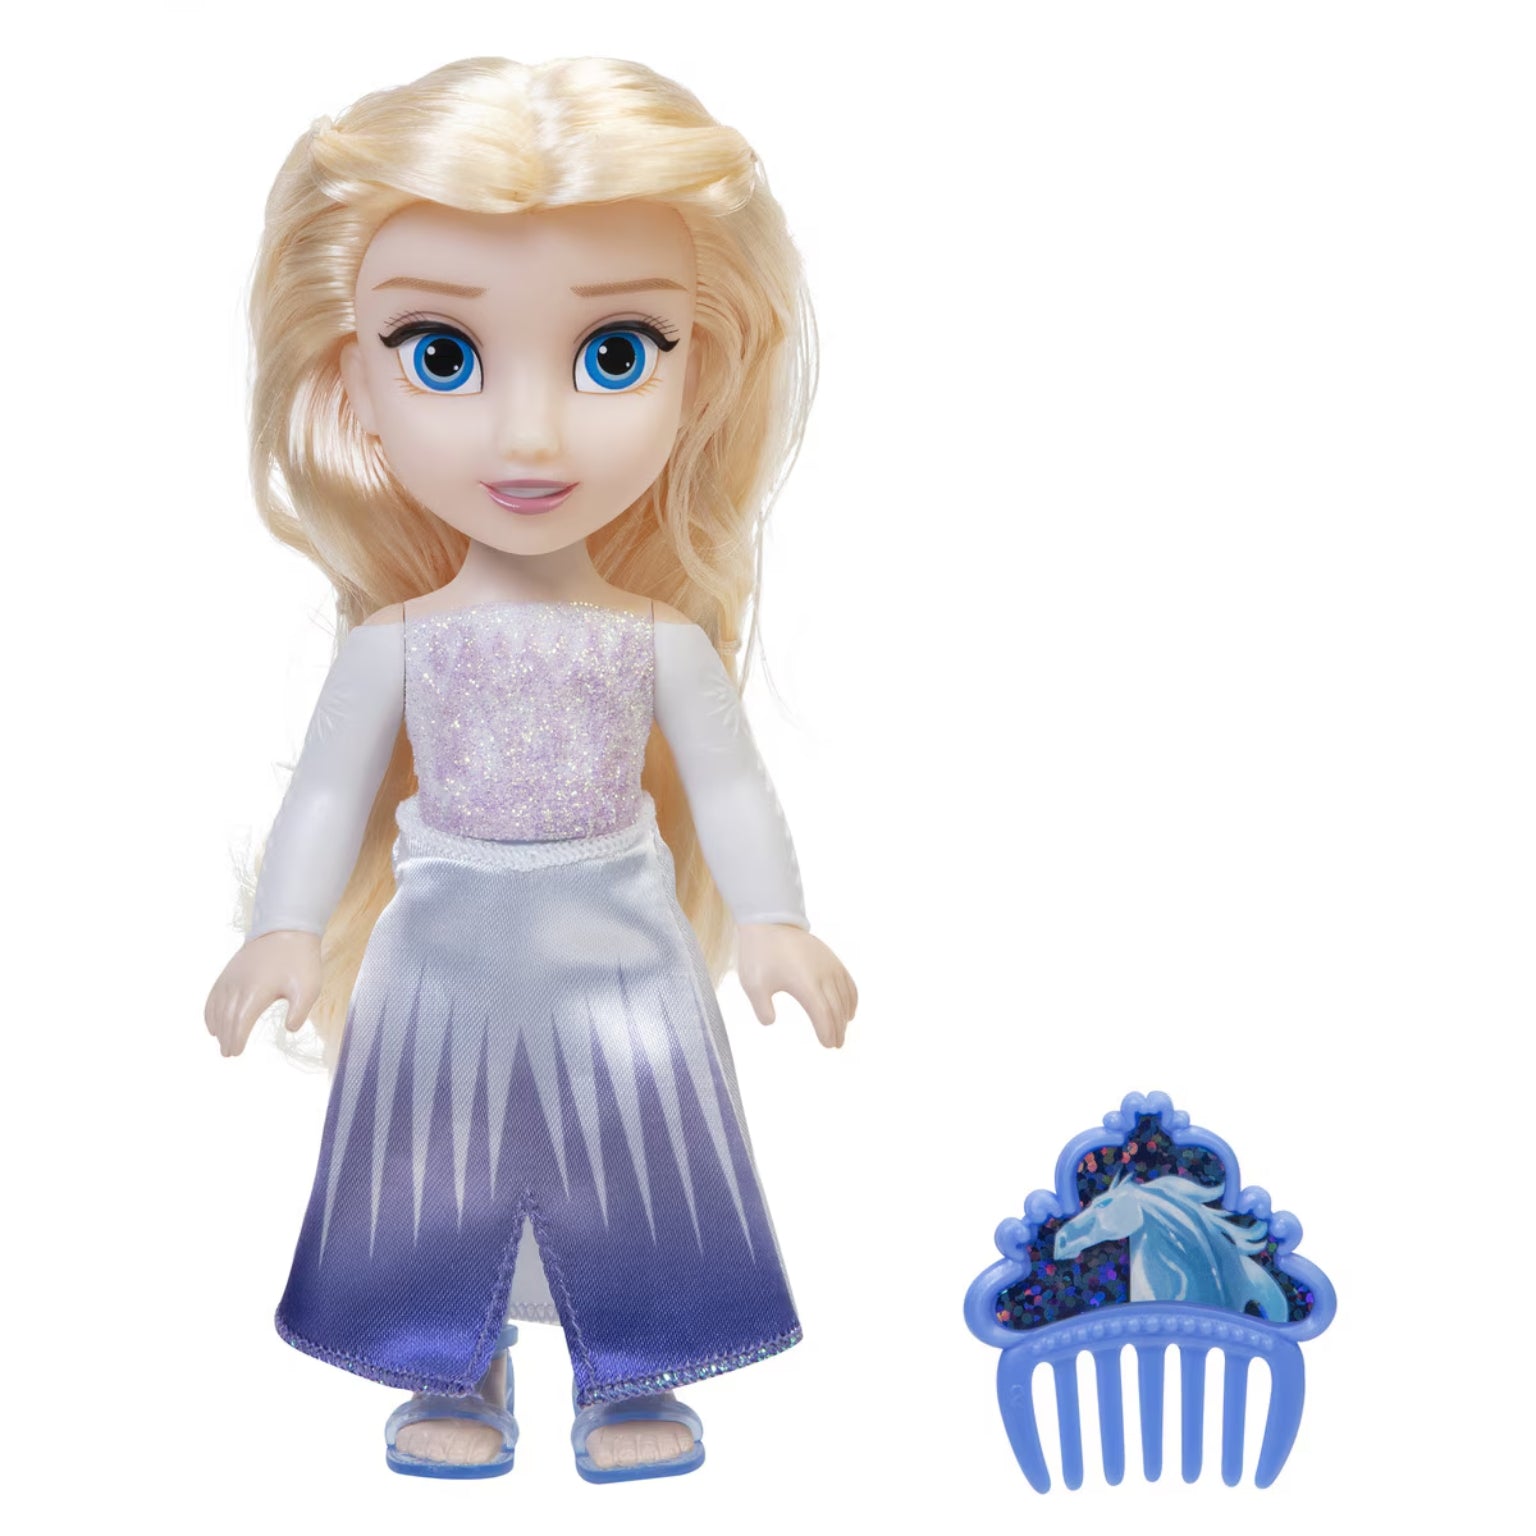 Boneca Princesa Disney – Elsa com vestido prateado